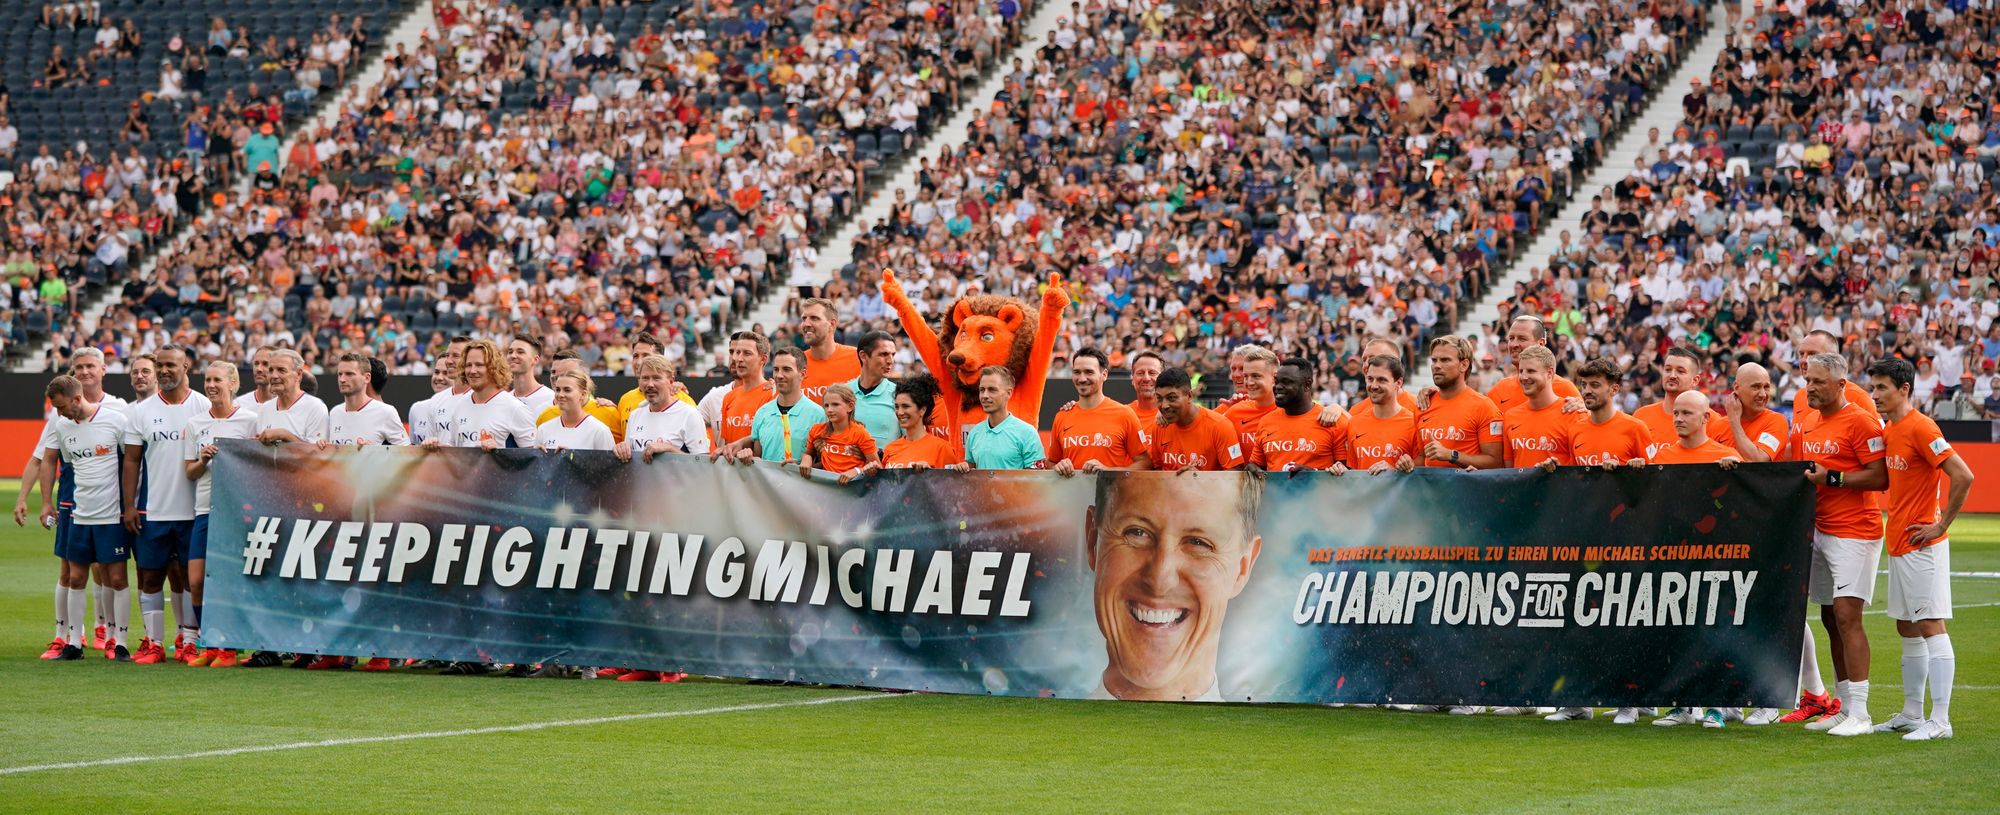 Huszonegy gól egy nemes ügyért, jótékonysági focigálát rendeztek, amelyen Michael Schumachernek üzentek / Fotó: EPA